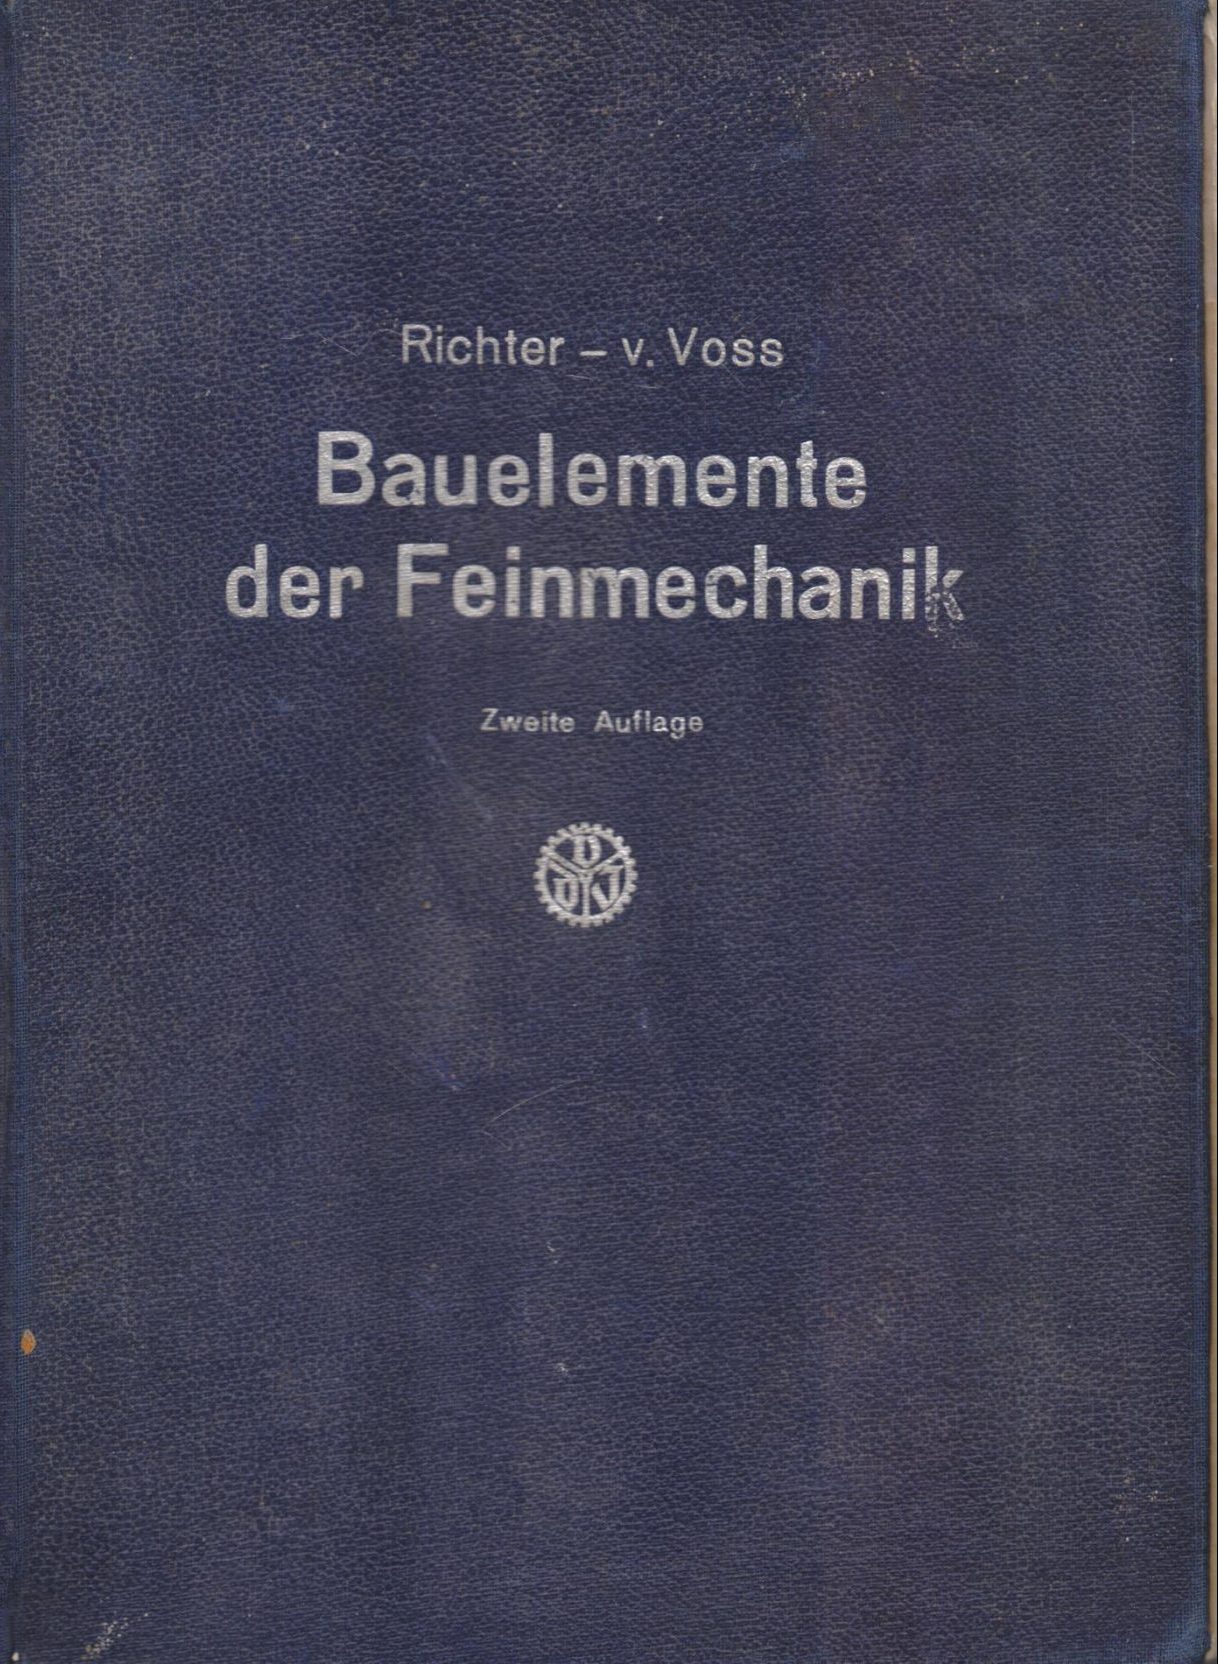 Bauelemente der Feinmechanik Richard v. Voss, Frit Kozer